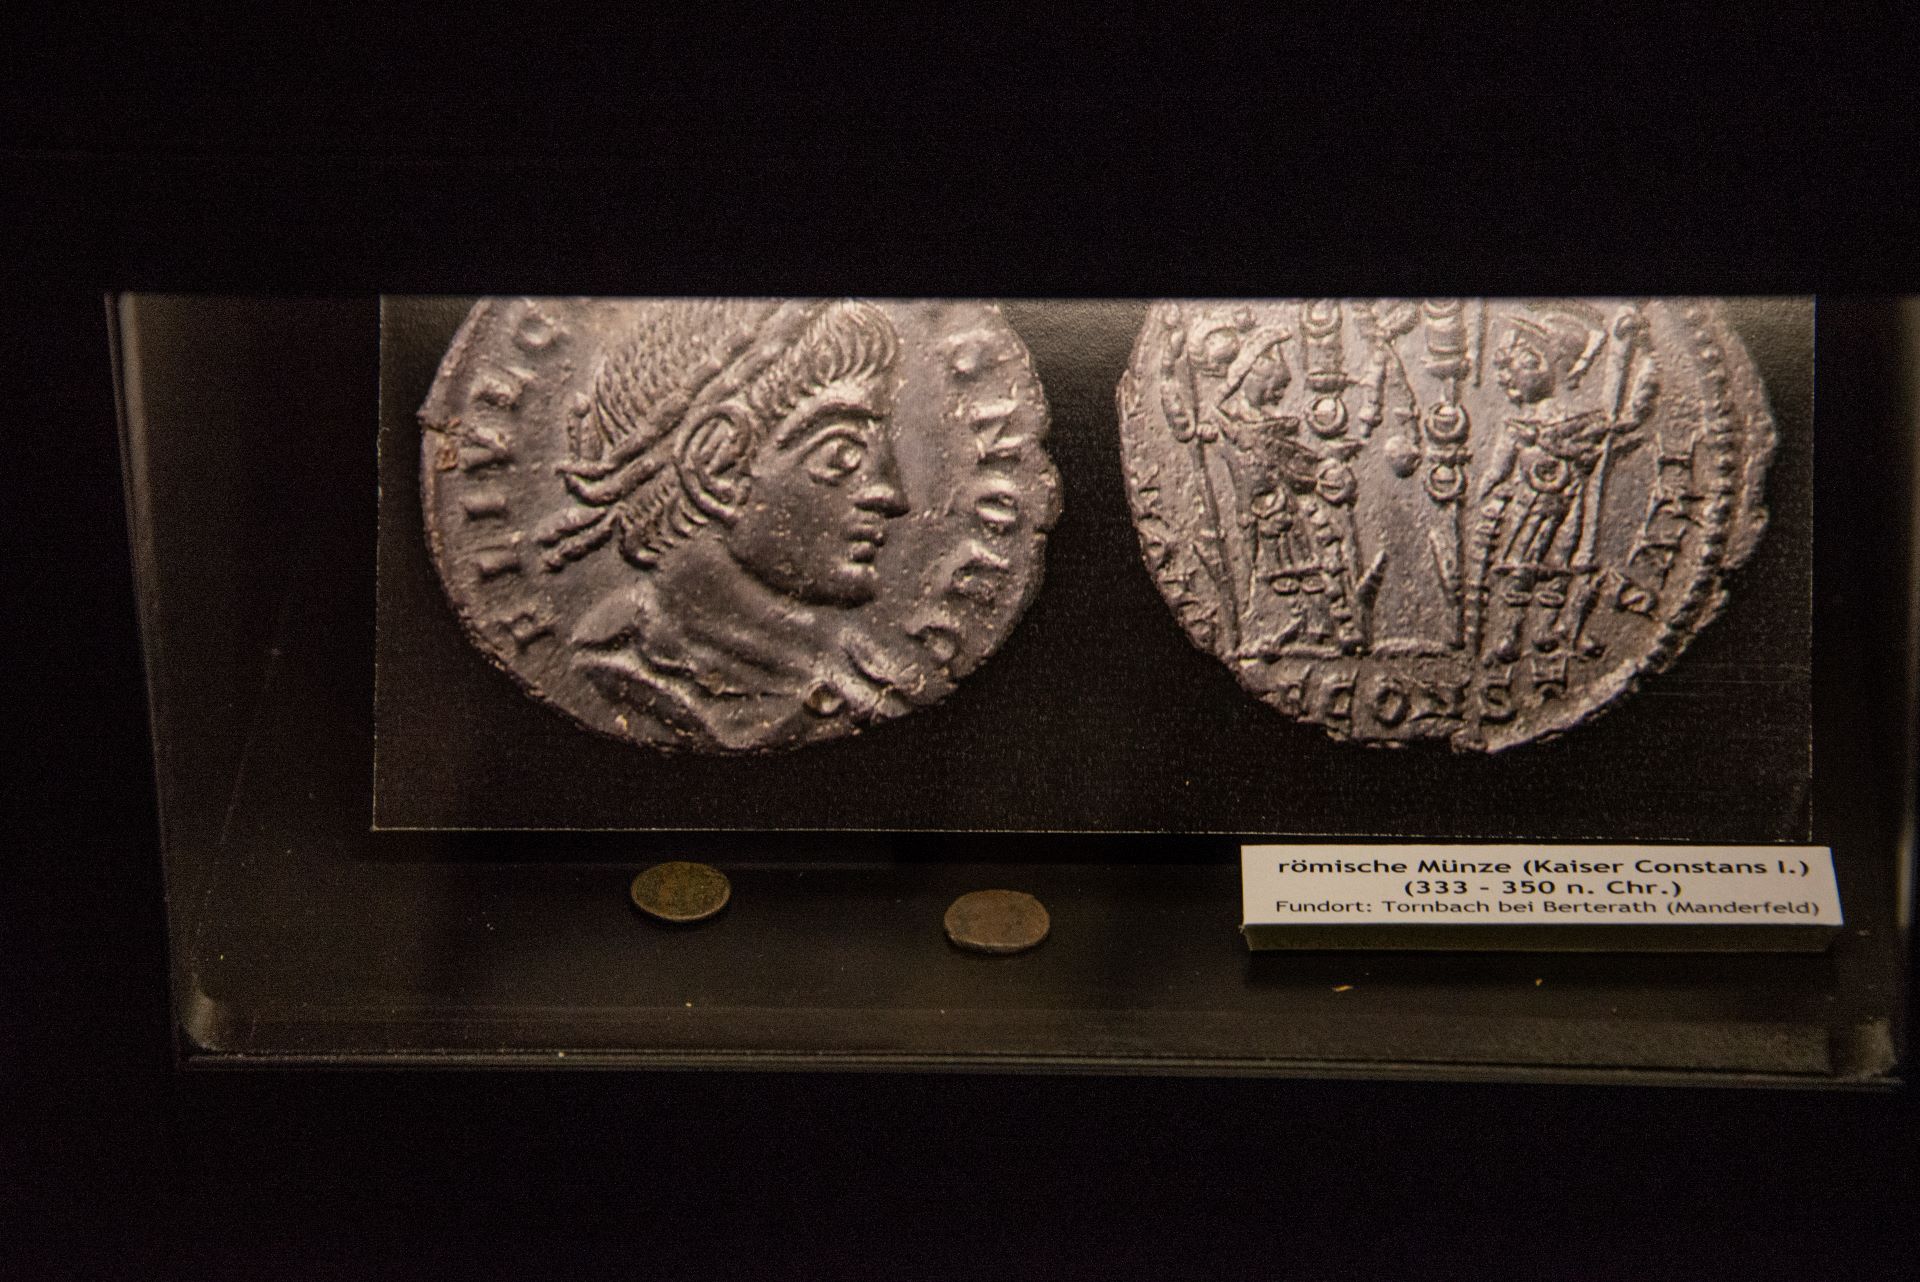 Zwei antike römische Münzen, die in einem Museum ausgestellt sind, sind vor einem dunklen Hintergrund scharf gestellt.